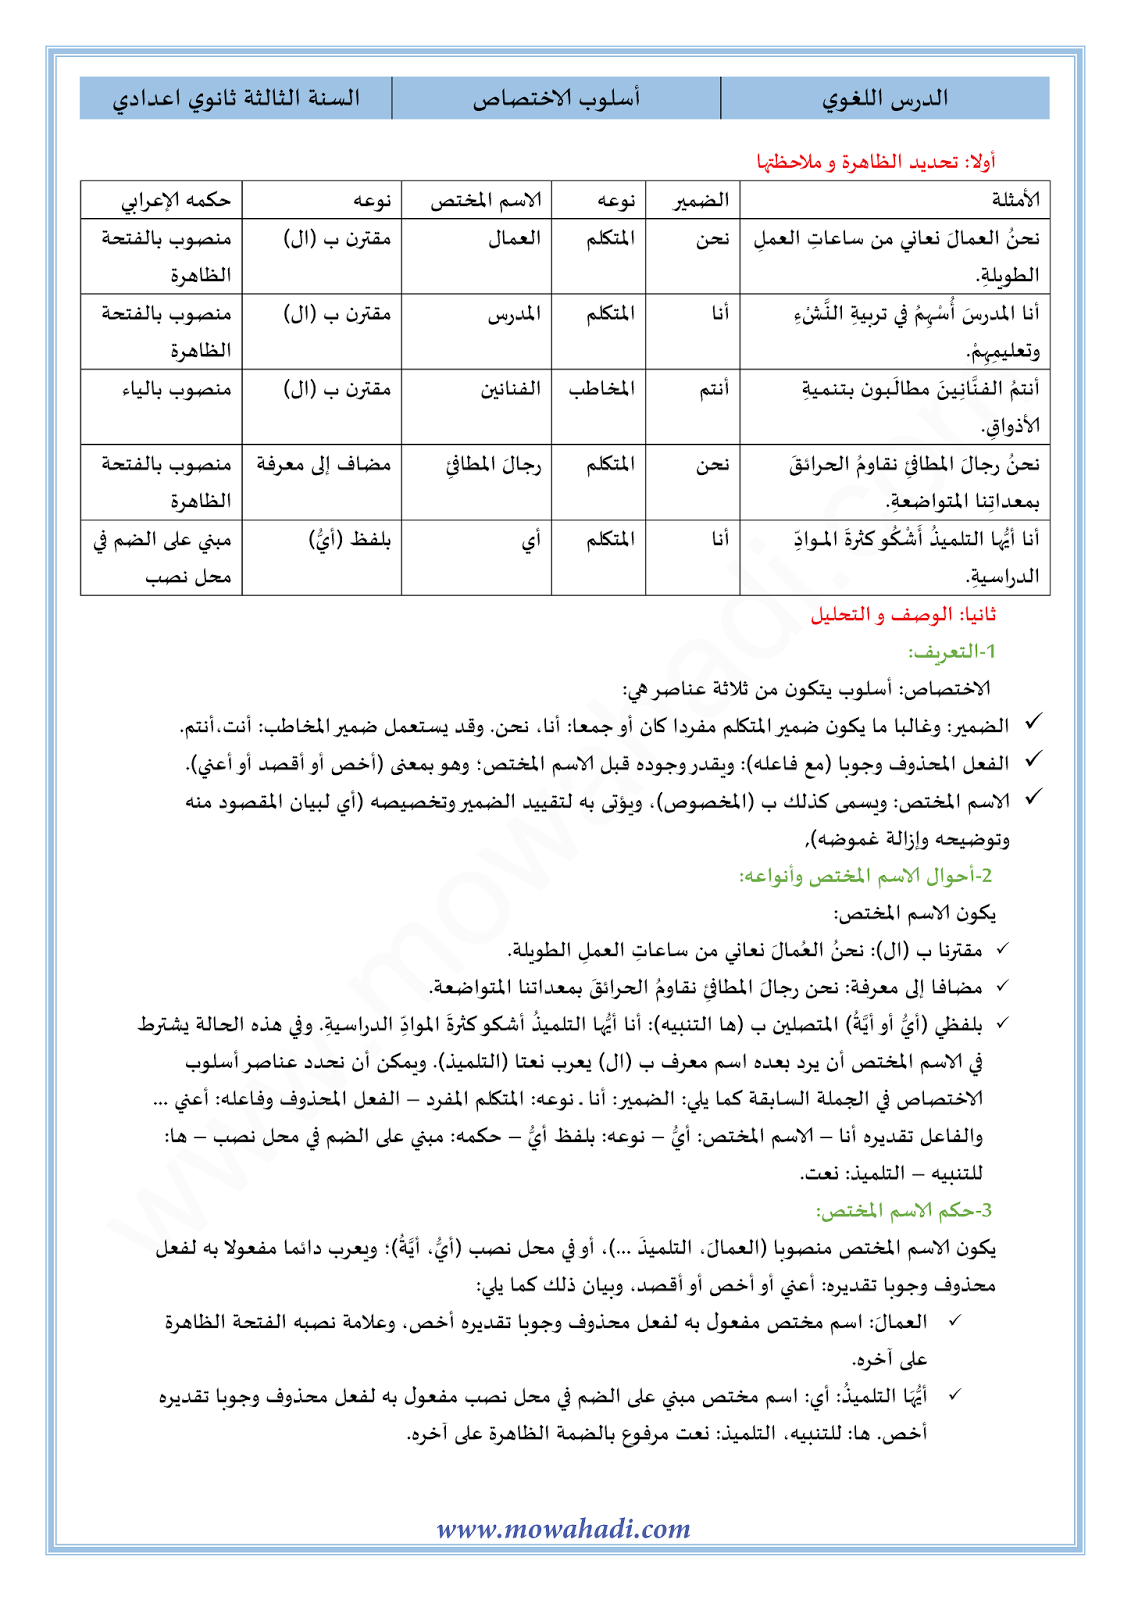 الدرس اللغوي أسلوب الاختصاص للسنة الثالثة اعدادي في مادة اللغة العربية 12-cours-dars-loghawi3_001